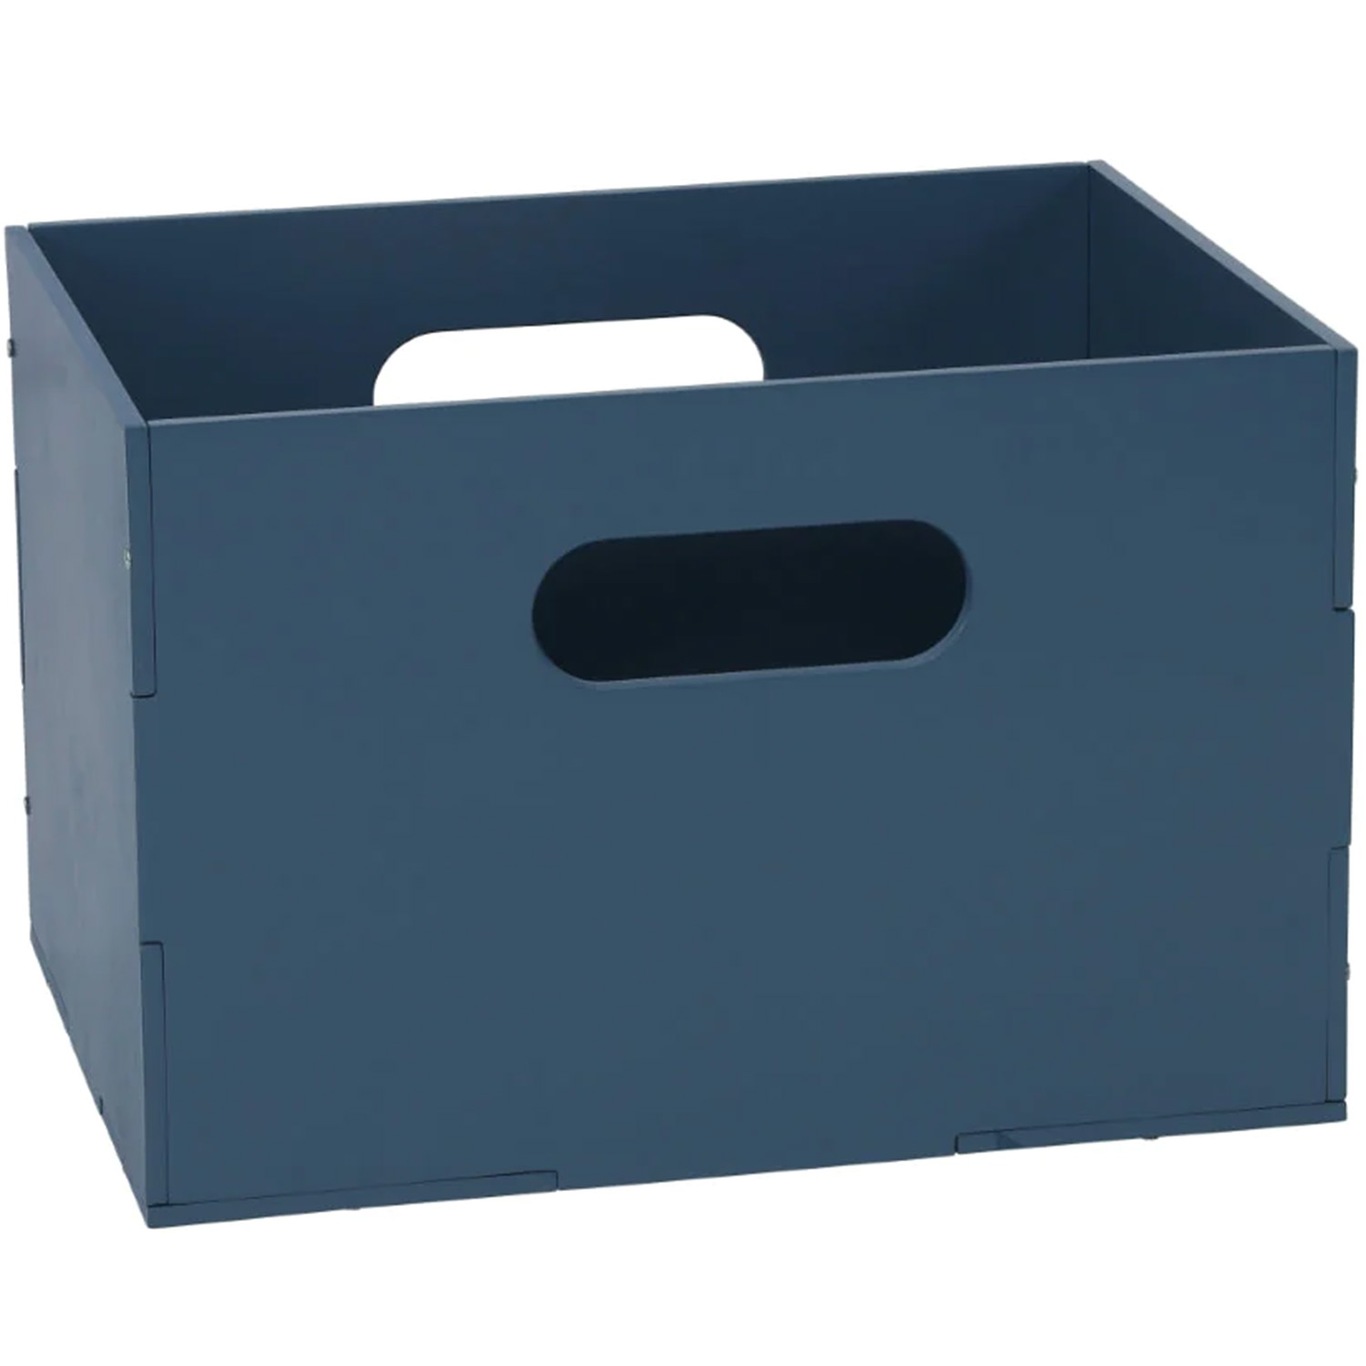 Kiddo Storage Box 24x33.5 cm, Blue